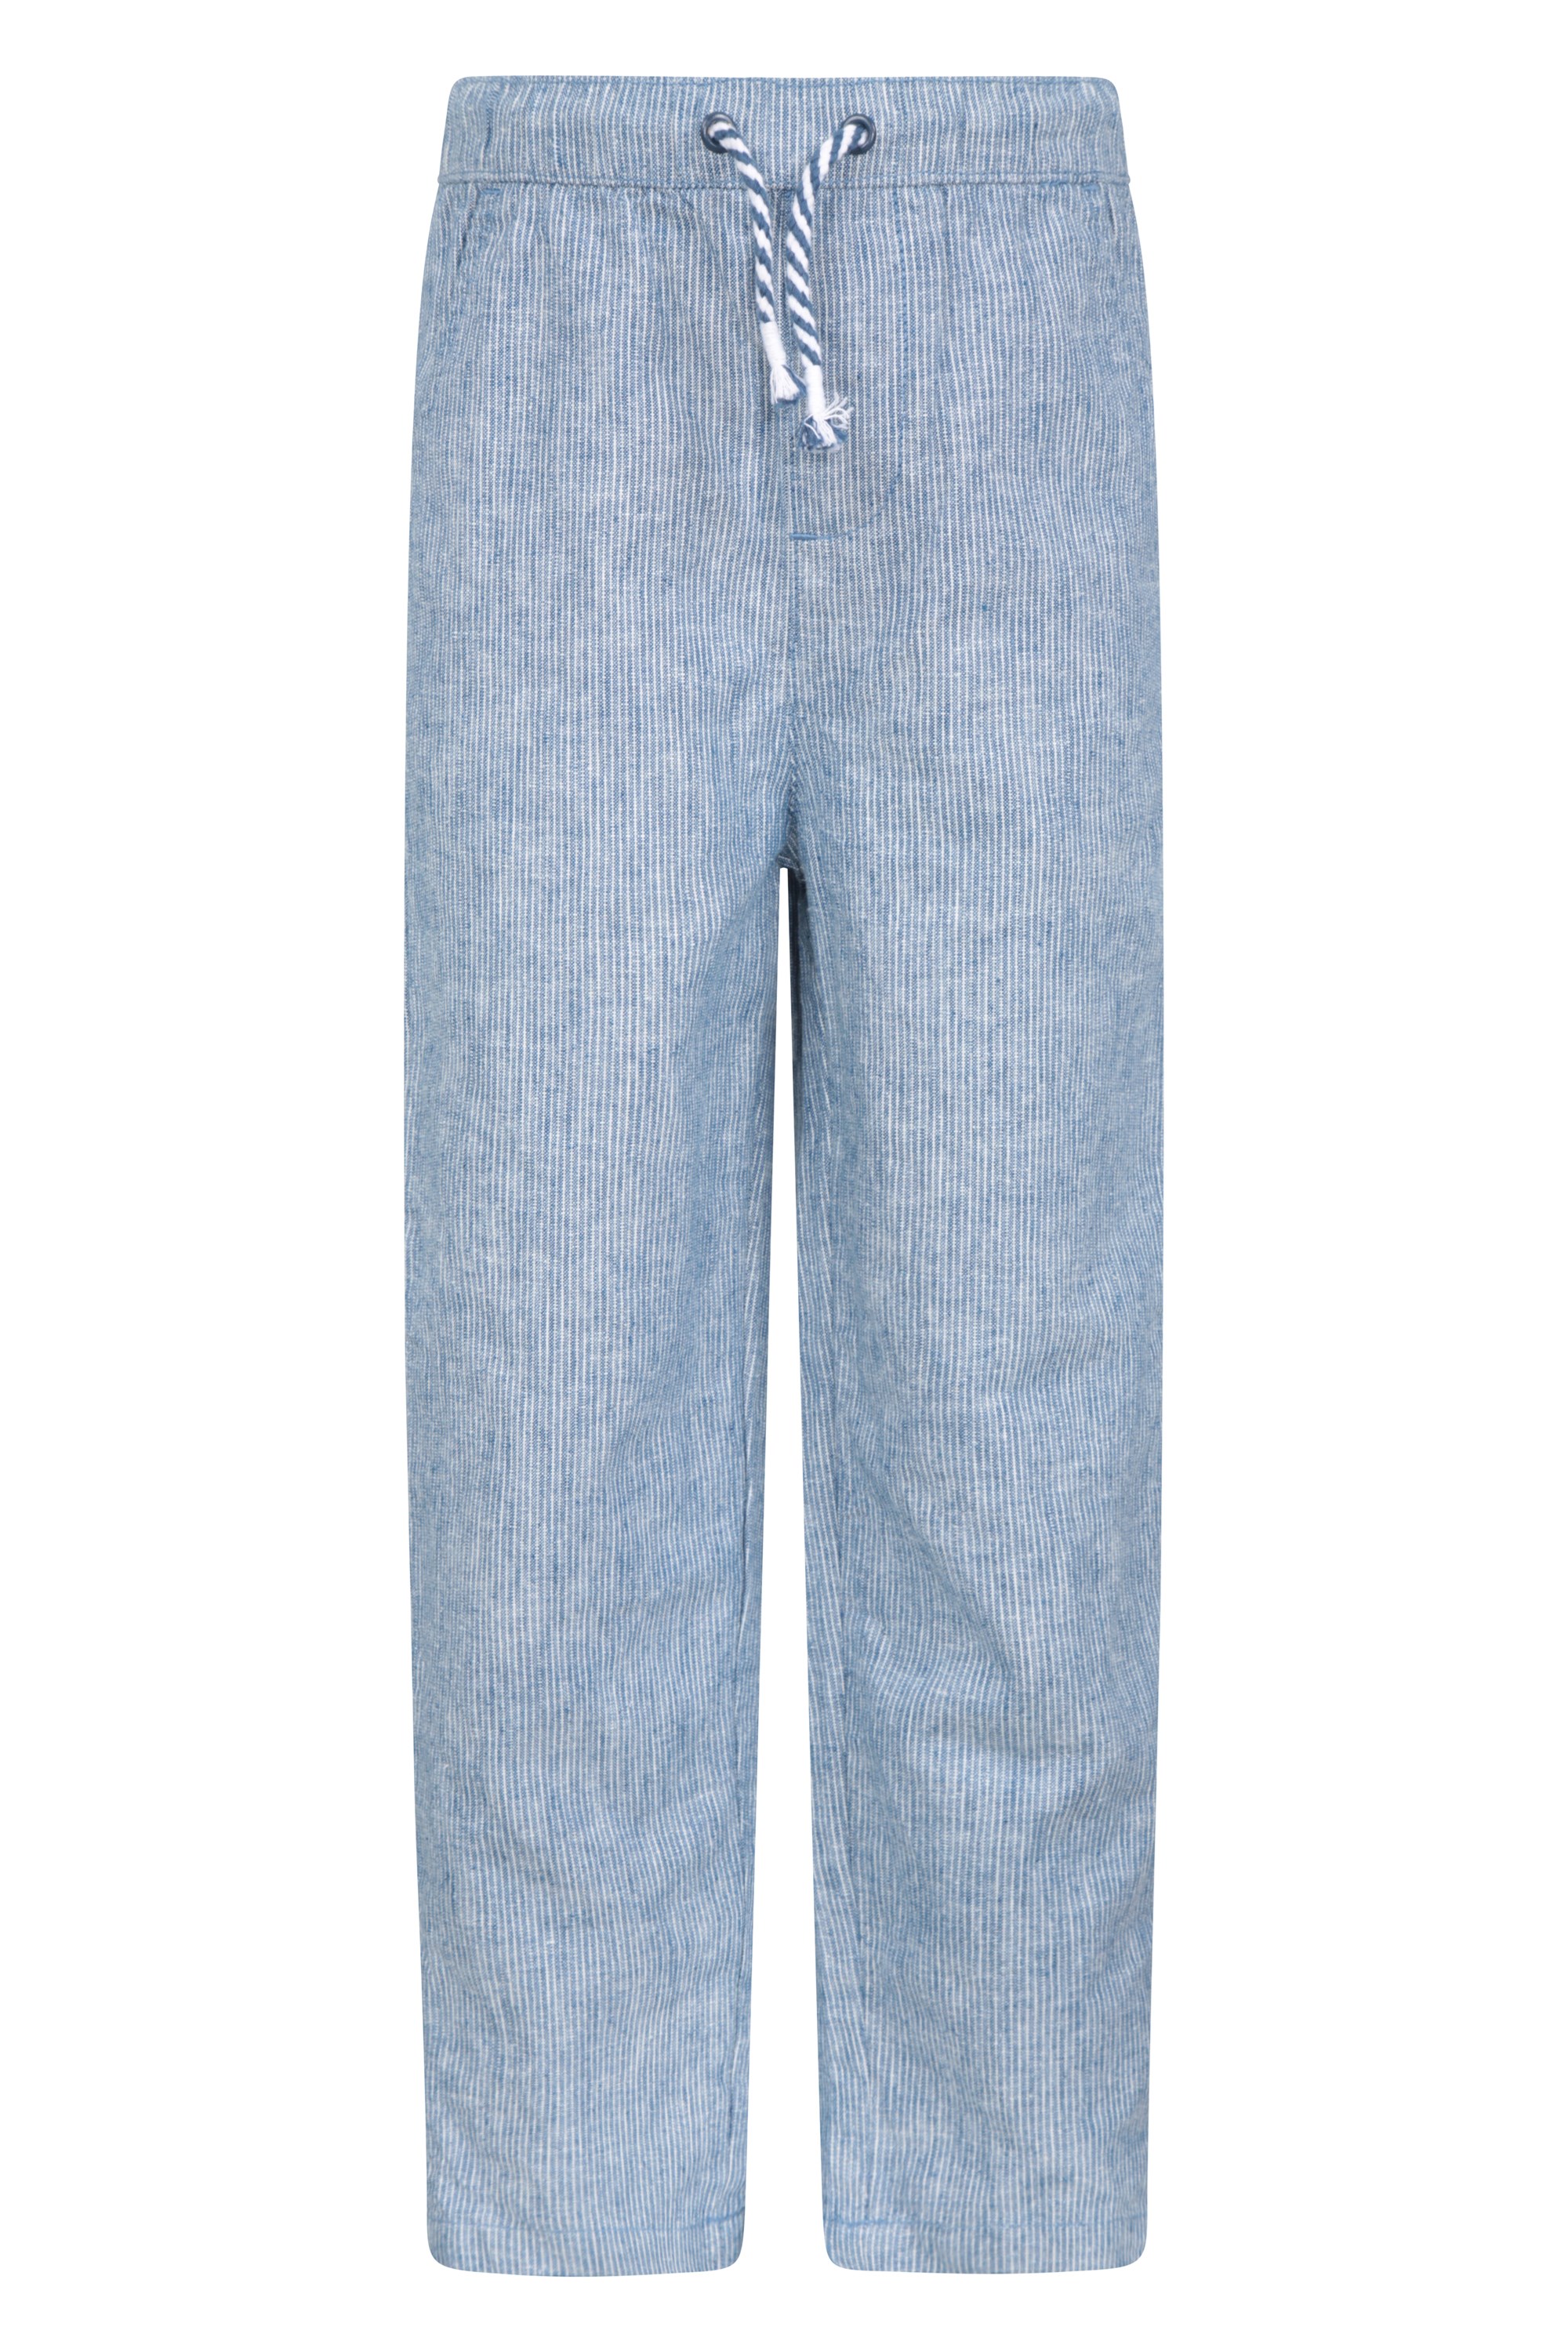 Pantalon en tissu créponné à rayures pour enfant - Bleu